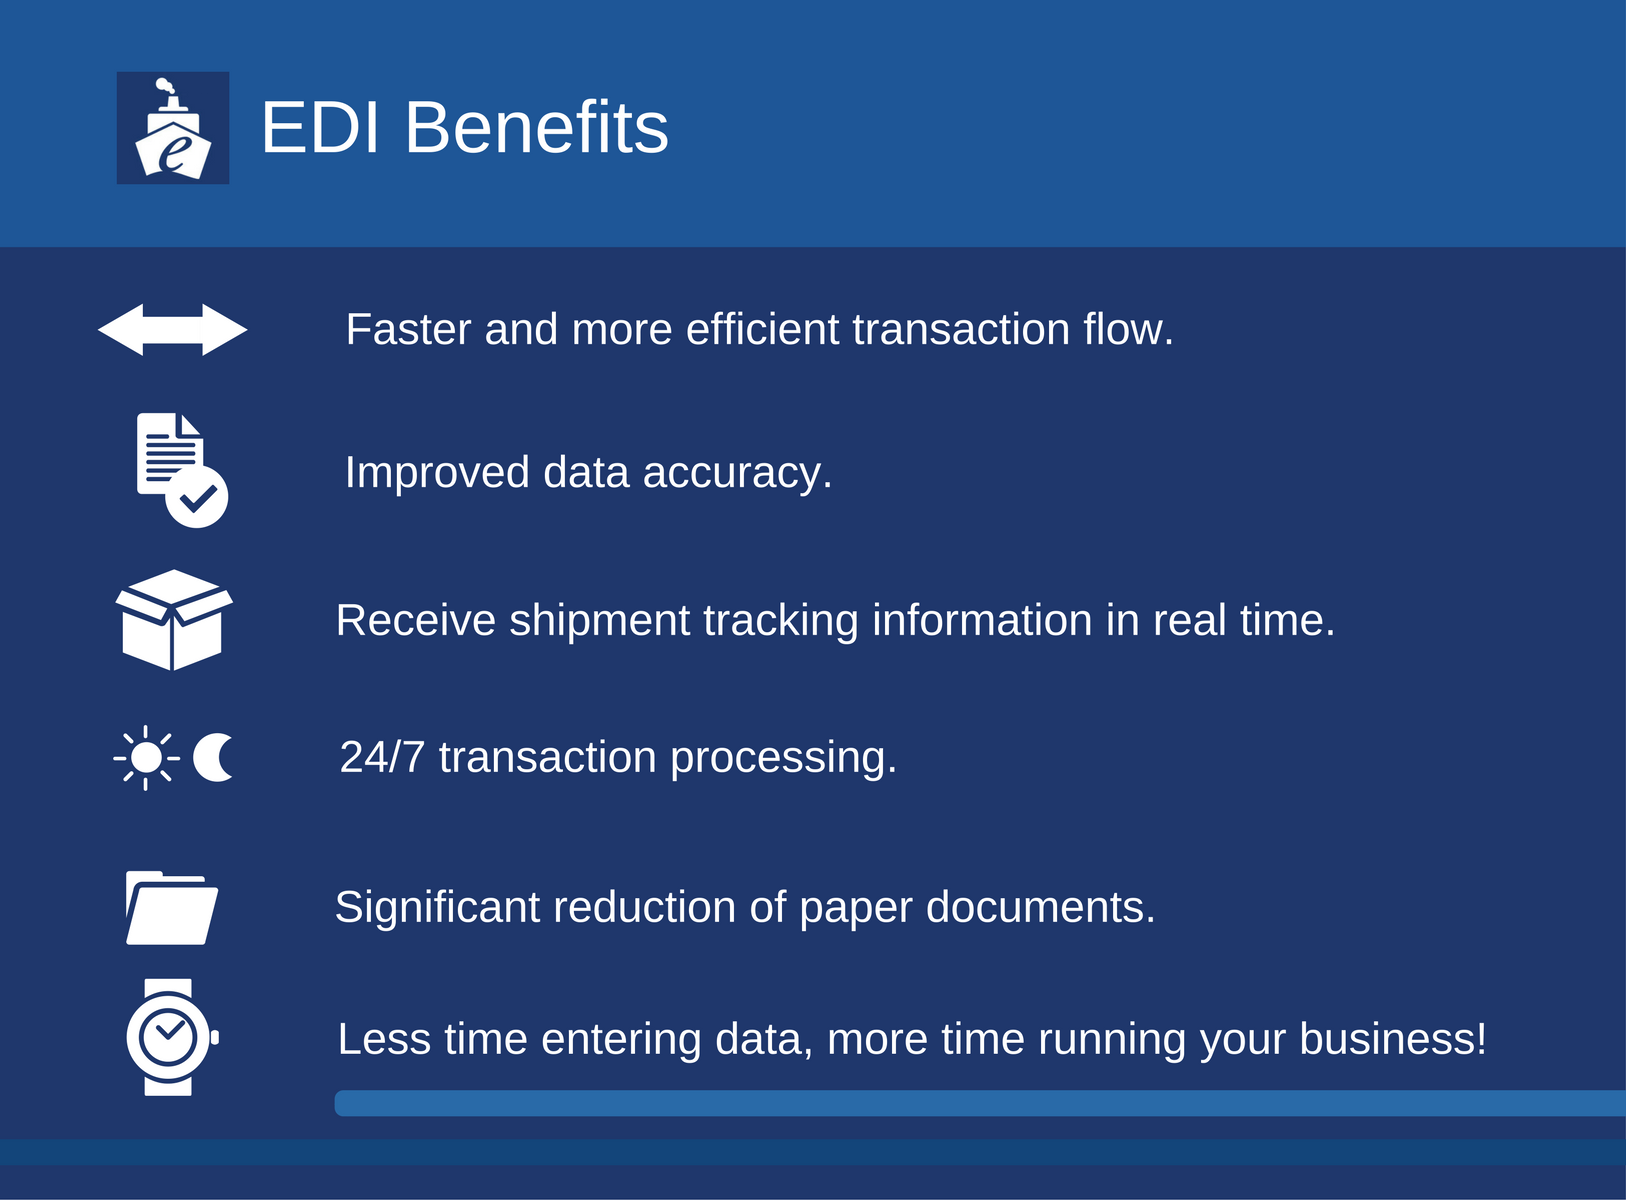 Electronic Data Interchange (EDI), EDI Benefits